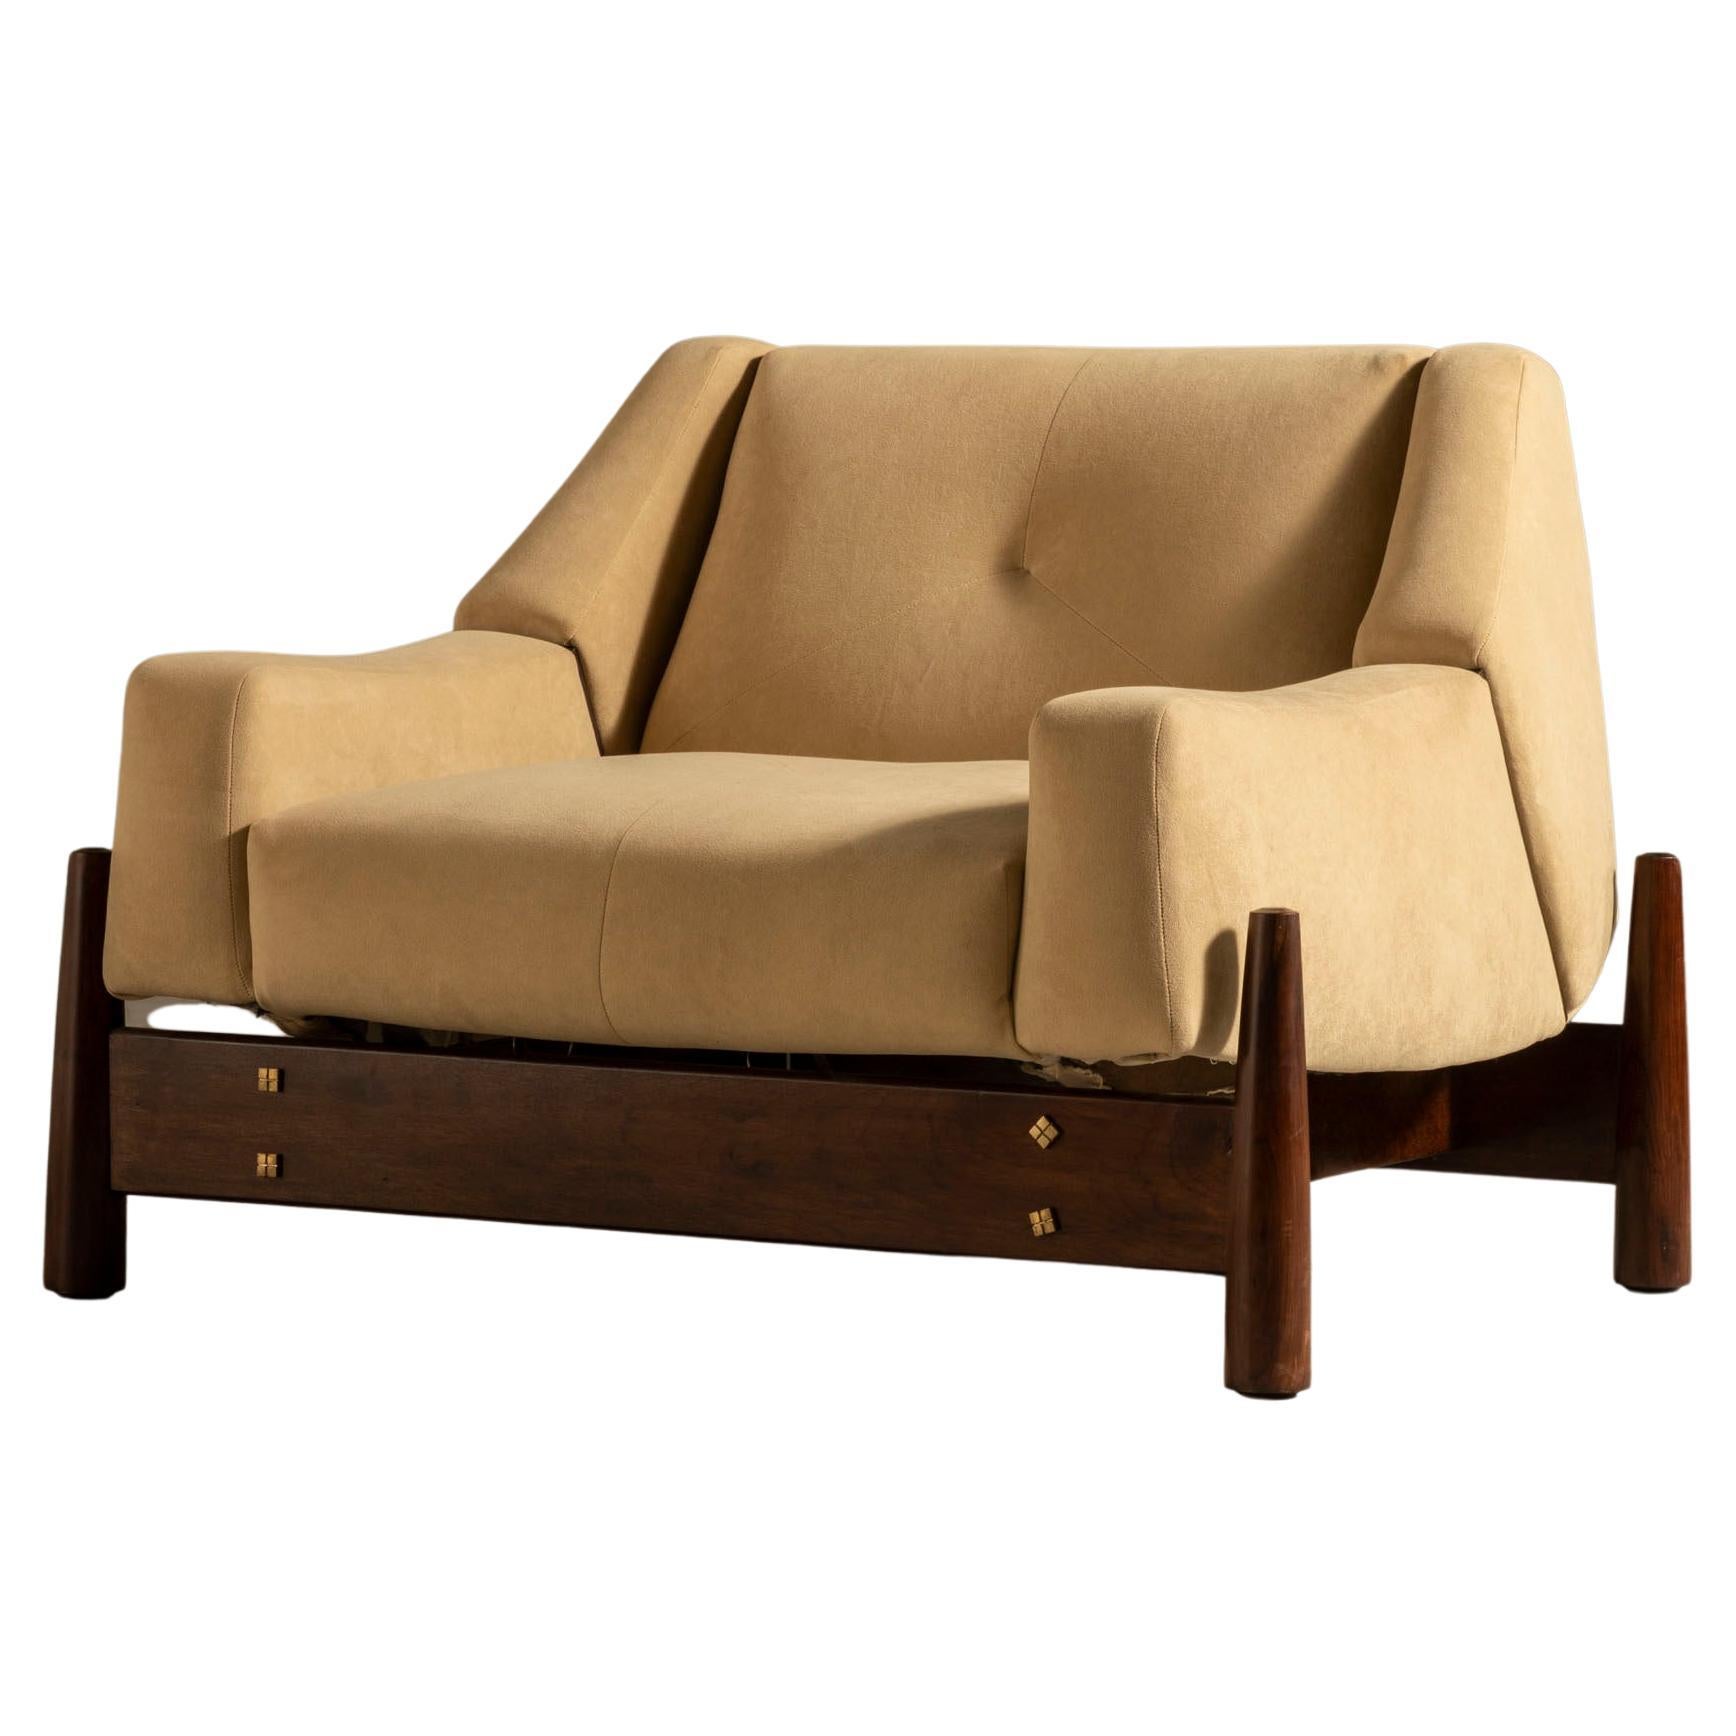 Móveis Cimo Lounge Chair, Brazilian Hardwood, Brazilian Midcentury